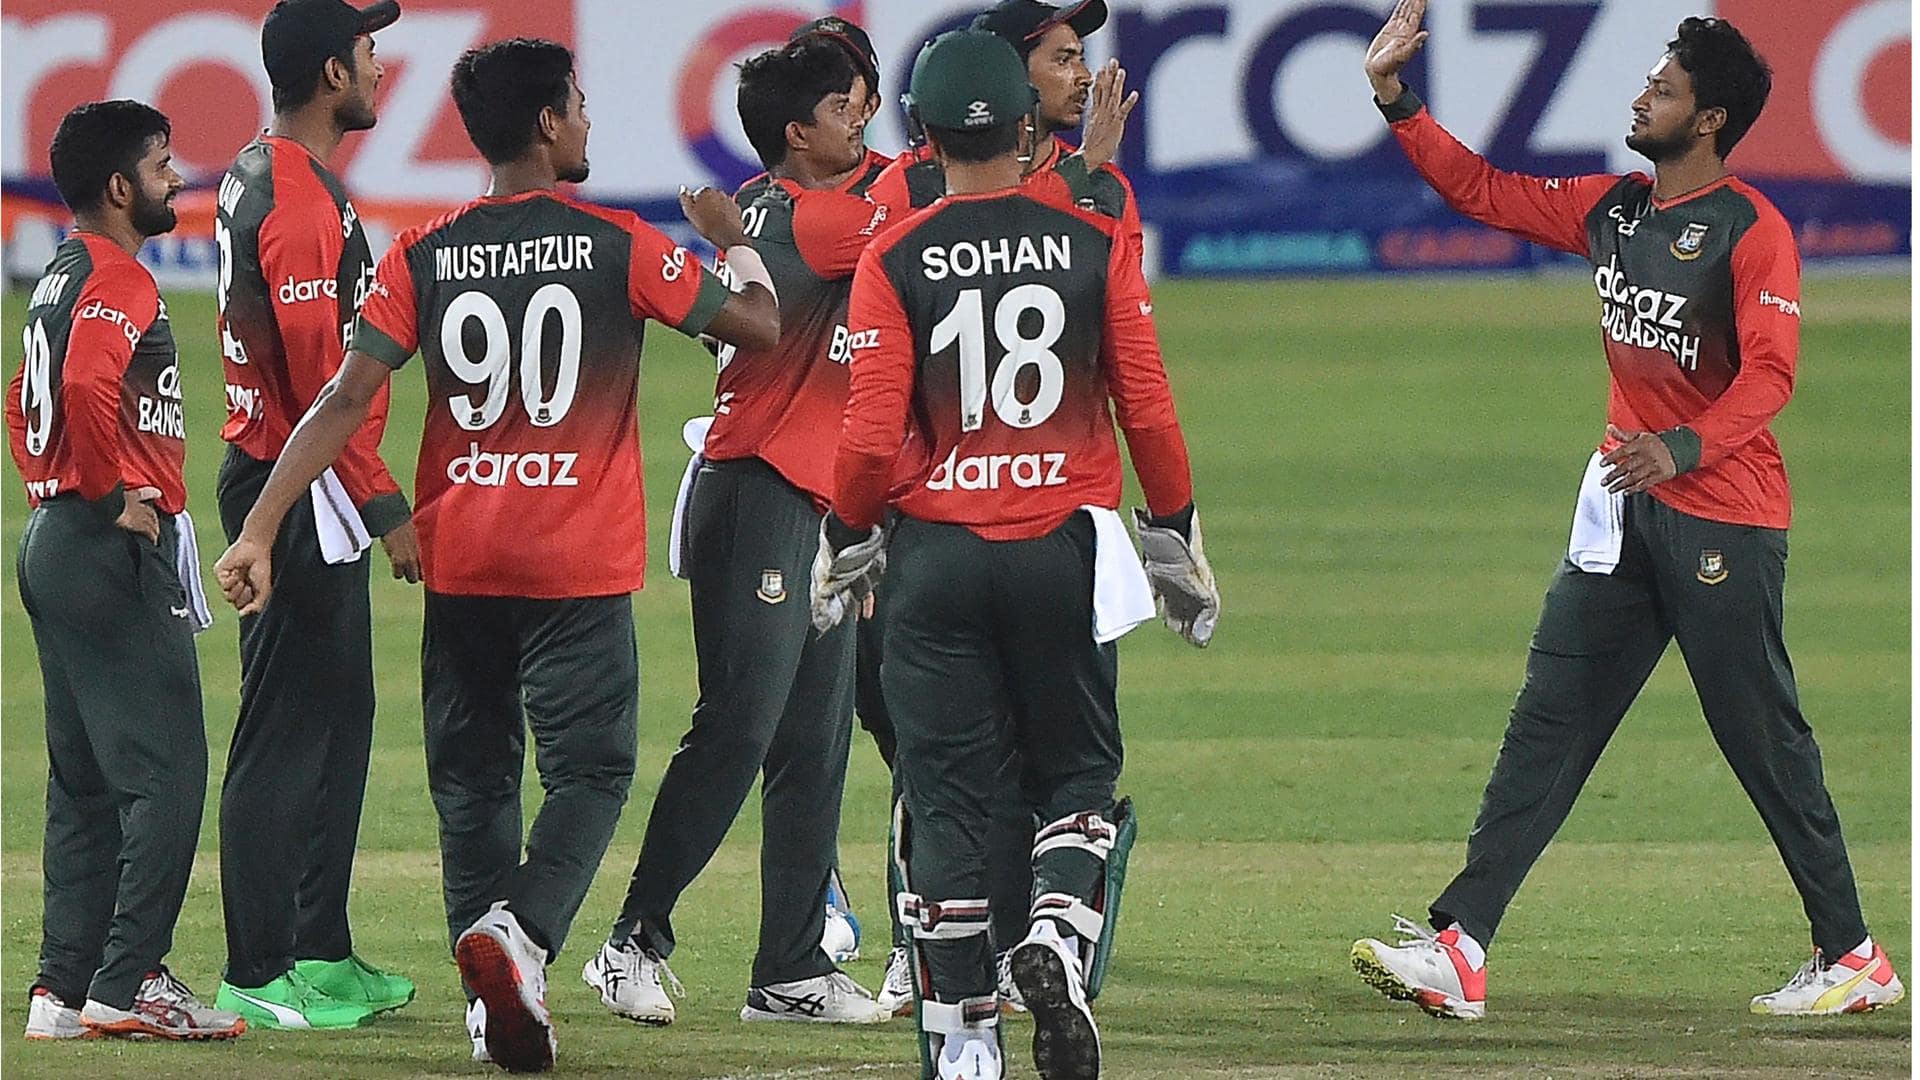 Bangladesh vs India, 3rd ODI: Preview, stats, and Fantasy XI